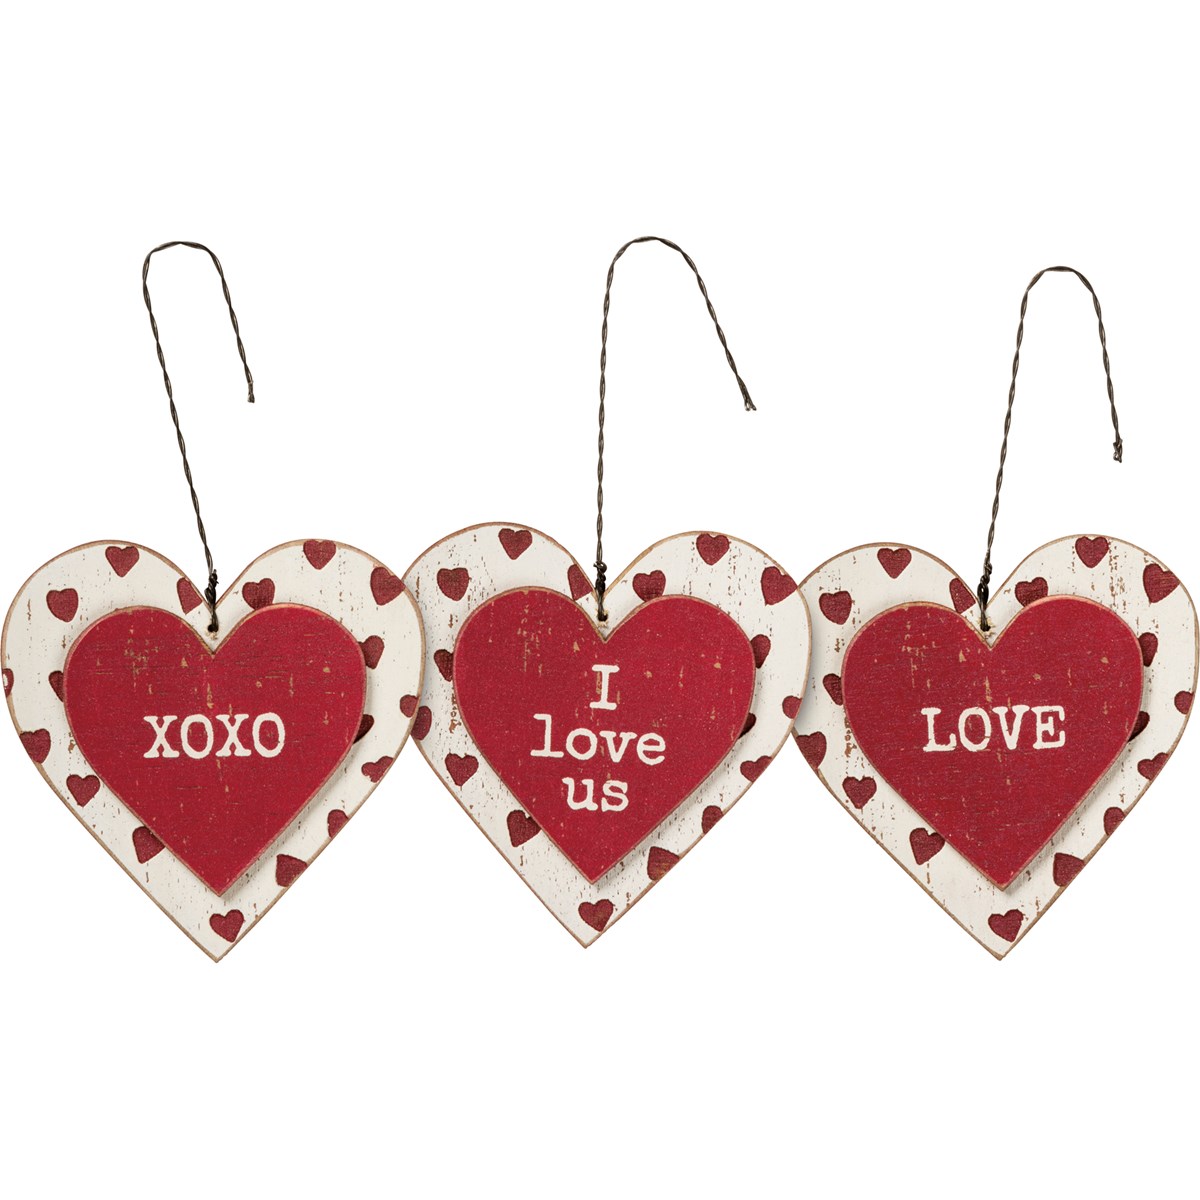 Ornament Set - Love - 3" x 3" x 0.25" - Wood, Wire